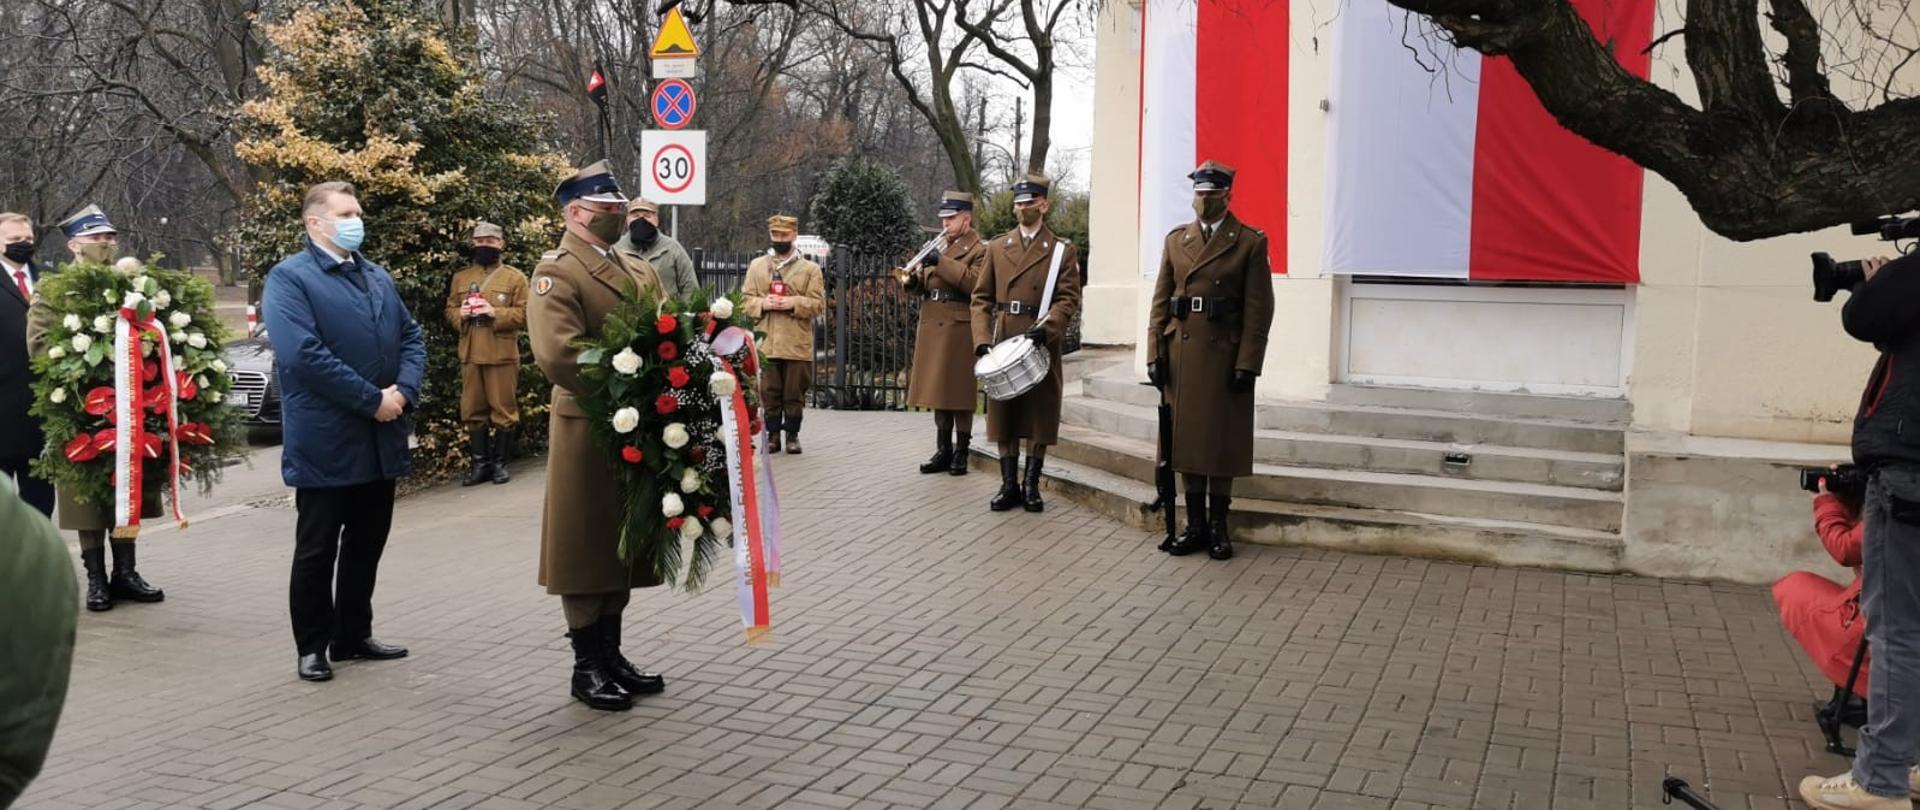 Żołnierze Wojska Polskiego ubrani w mundury. Jeden z nich gra na bębnie, inny na trąbce. Po środku jeden żołnierz z wieńcem. Tuż za nim minister Przemysław Czarnek. Dookoła żołnierze ze zniczami w rękach. 